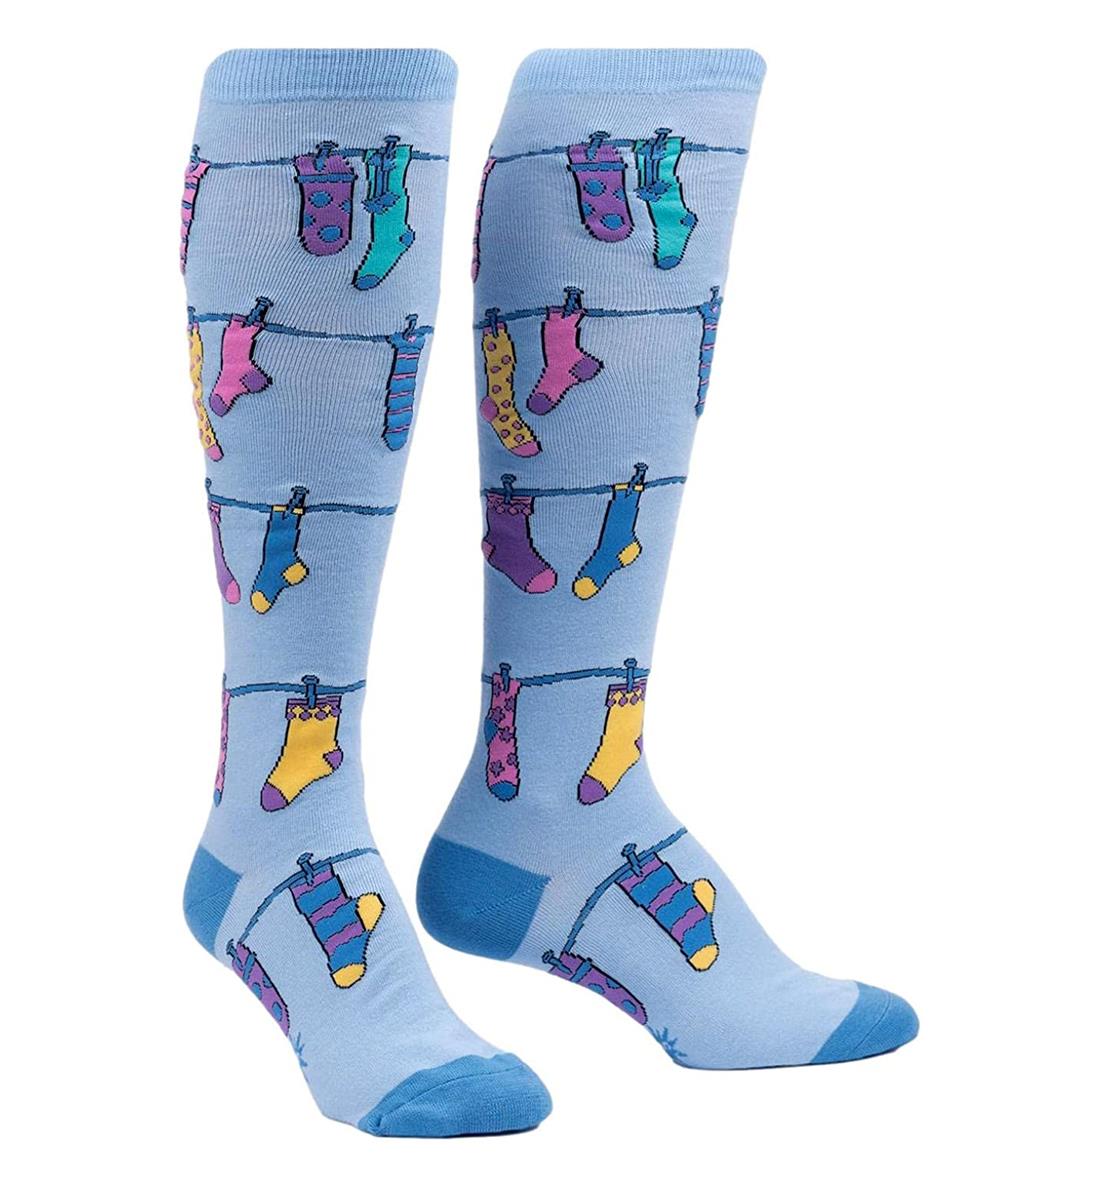 SOCK it to me Unisex Knee High Socks (F0591),Socks on Socks - Socks on Socks,One Size